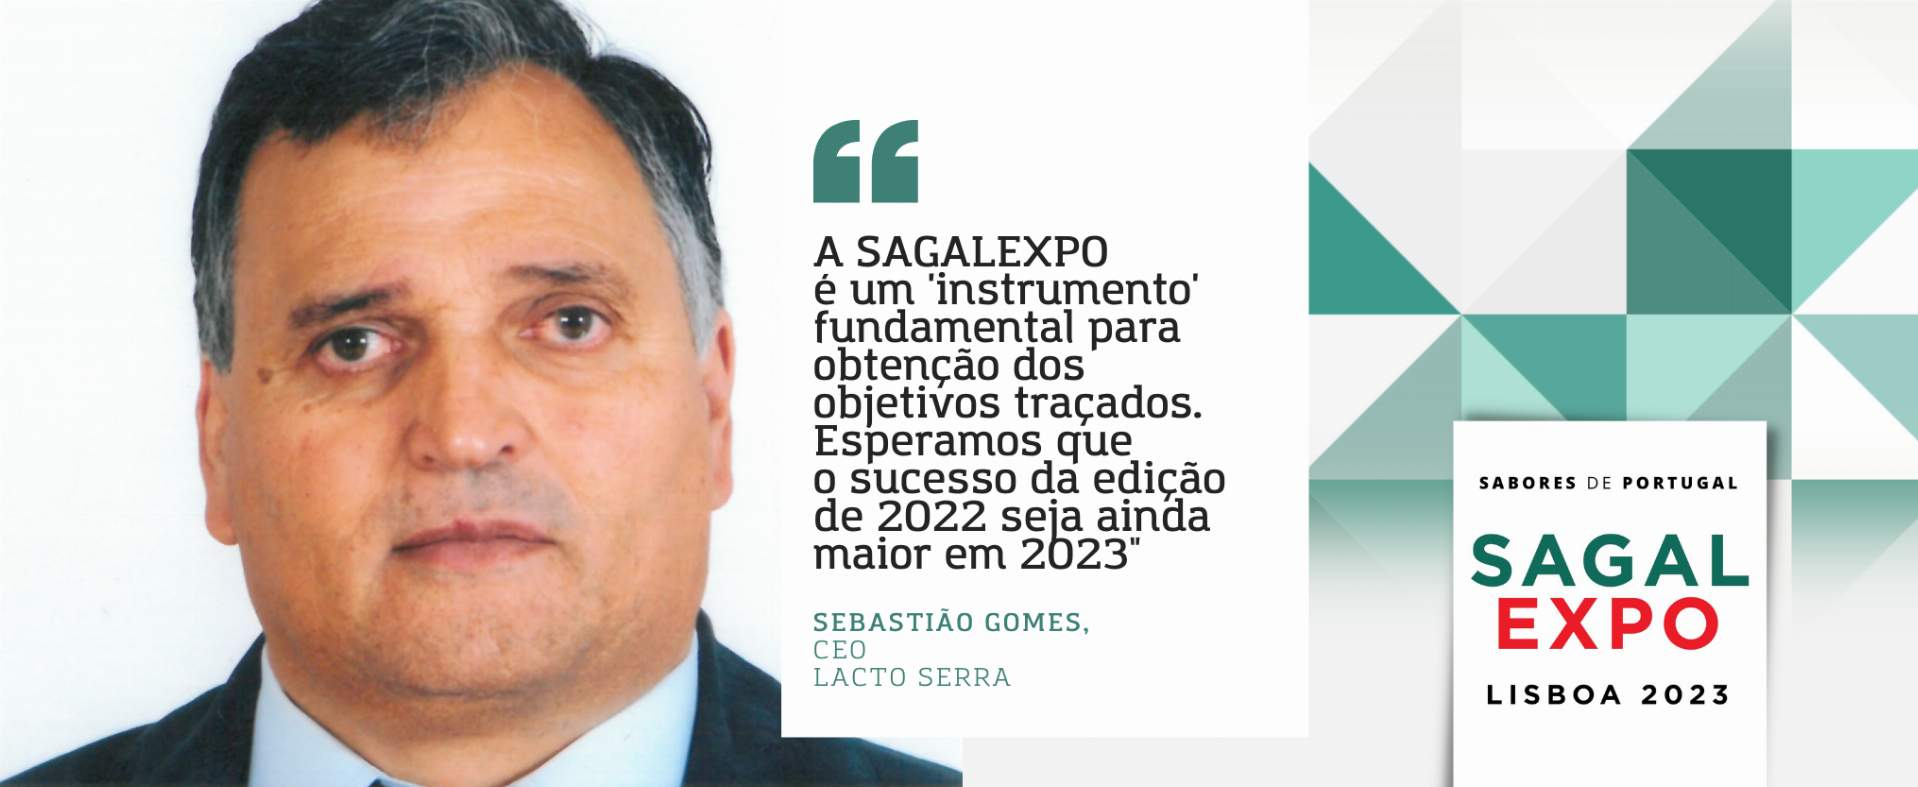 Lacto Serra: “A SAGALEXPO é um 'instrumento' fundamental para obtenção dos objetivos traçados. Esperamos que o sucesso da edição de 2022 seja ainda maior em 2023"